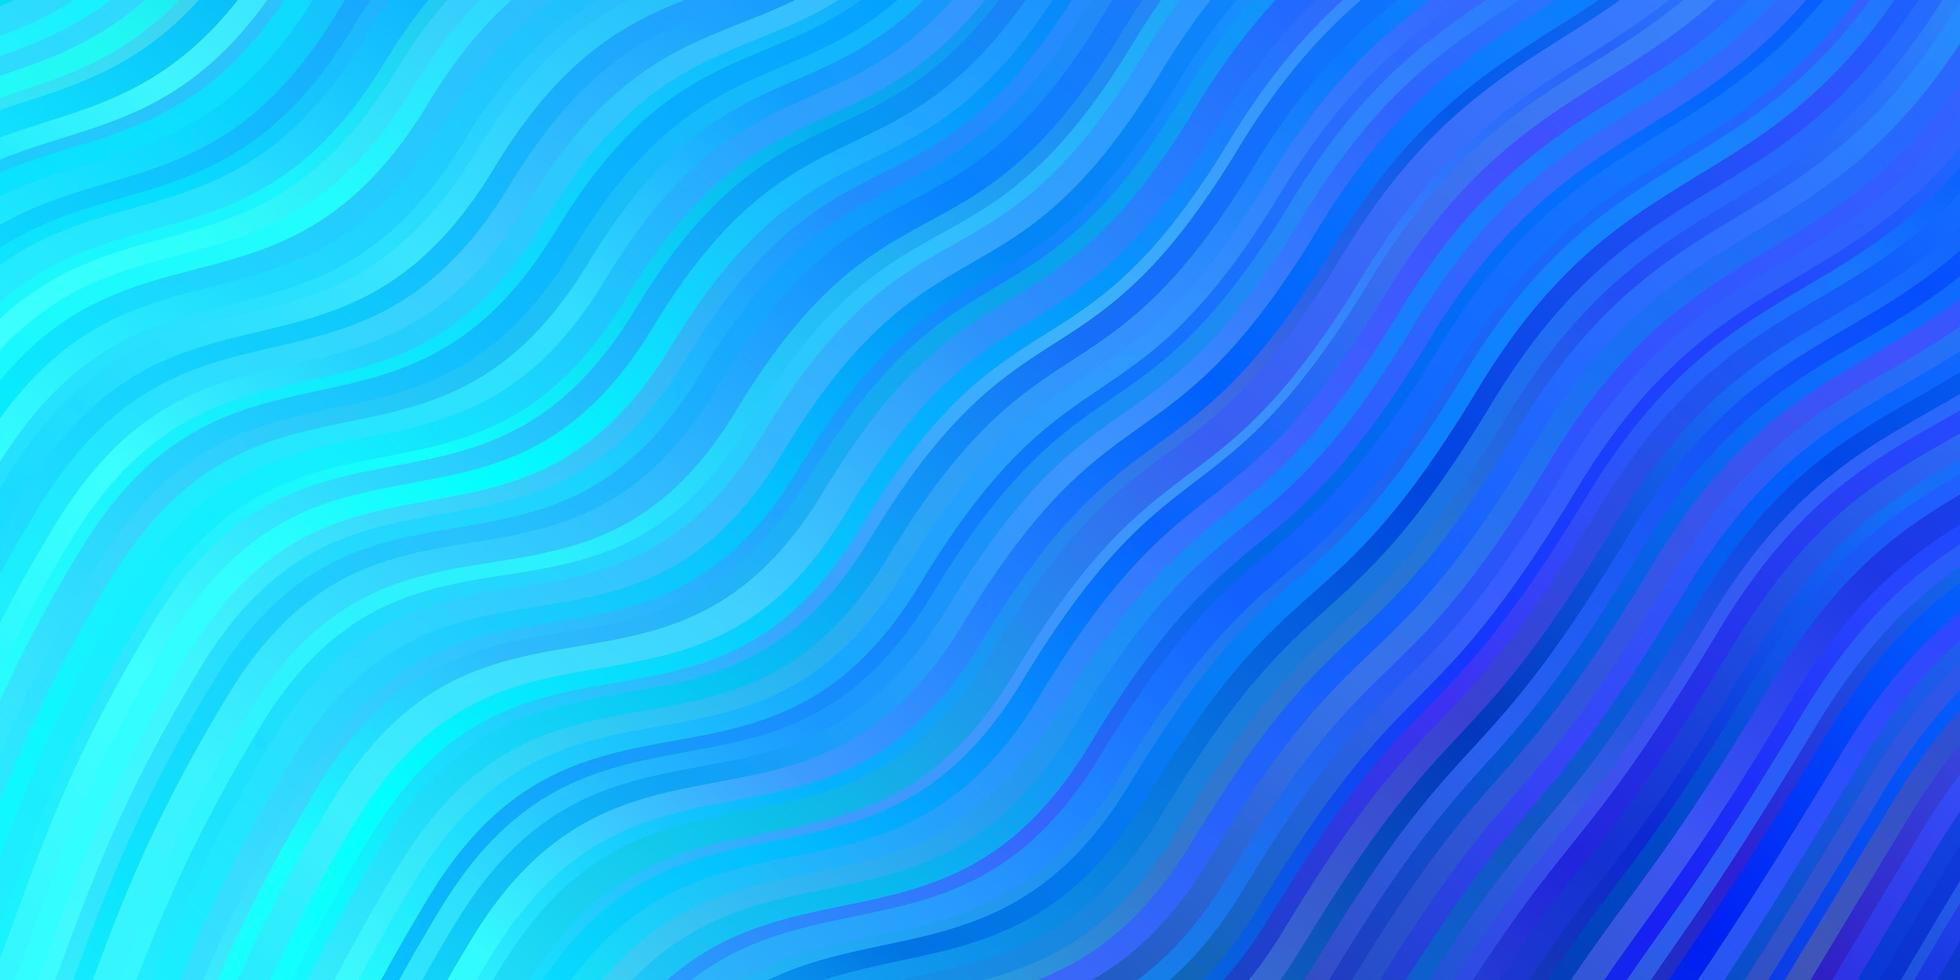 ljusblå vektor bakgrund med bågar.